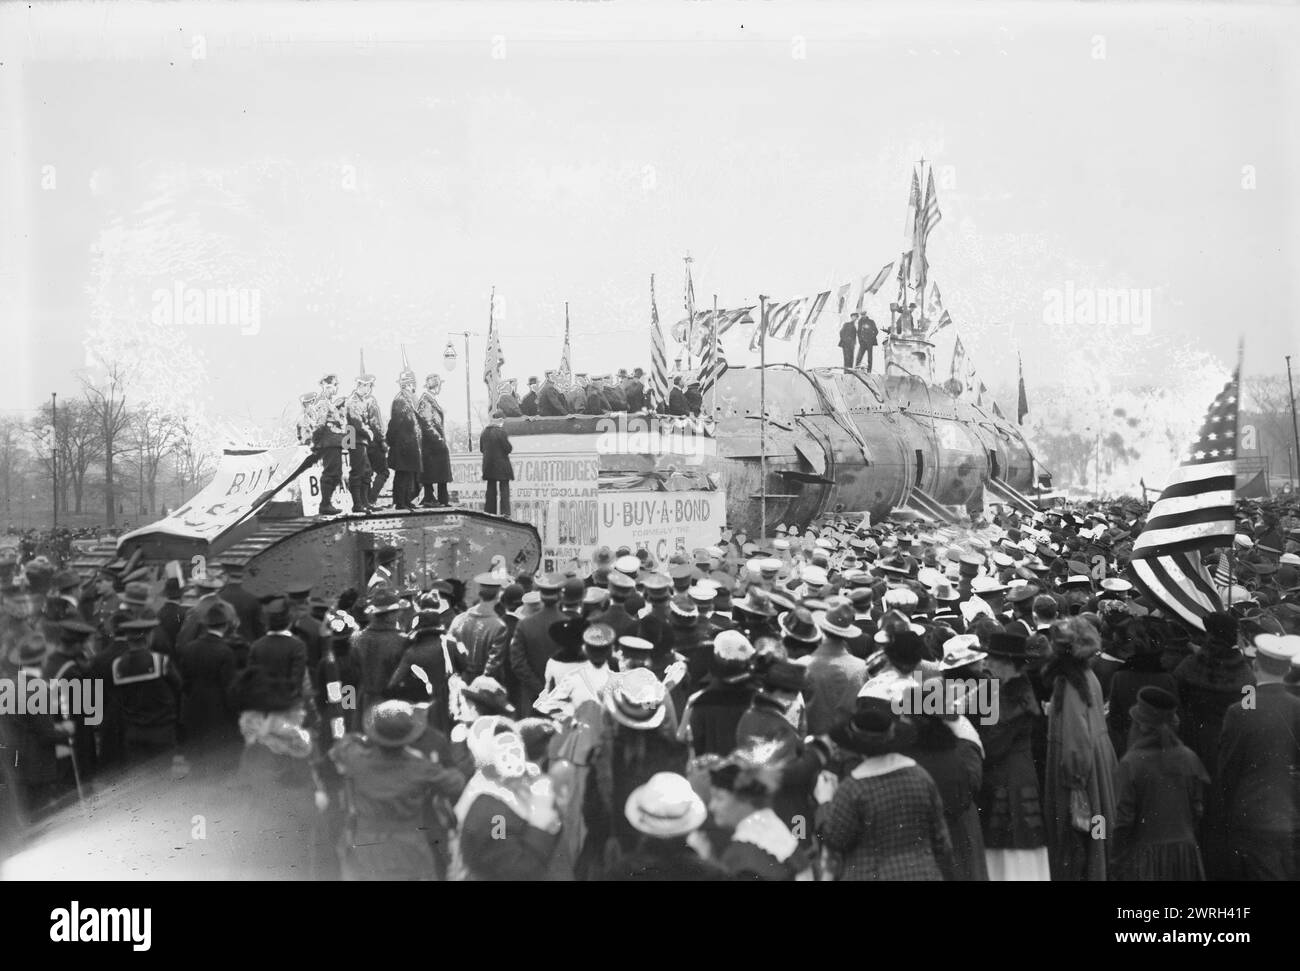 Freiheitsleihprozession im Central Park, 25. Oktober 1917. Die SM UC-5, ein U-Boot vom Typ UC I, das von den Alliierten gefangen genommen wurde, wurde nach New York City gebracht und in U-Buy-a-Bond umbenannt. Das U-Boot nahm am 25. Oktober 1917 an der Liberty Loan Parade in New York City Teil. Stockfoto